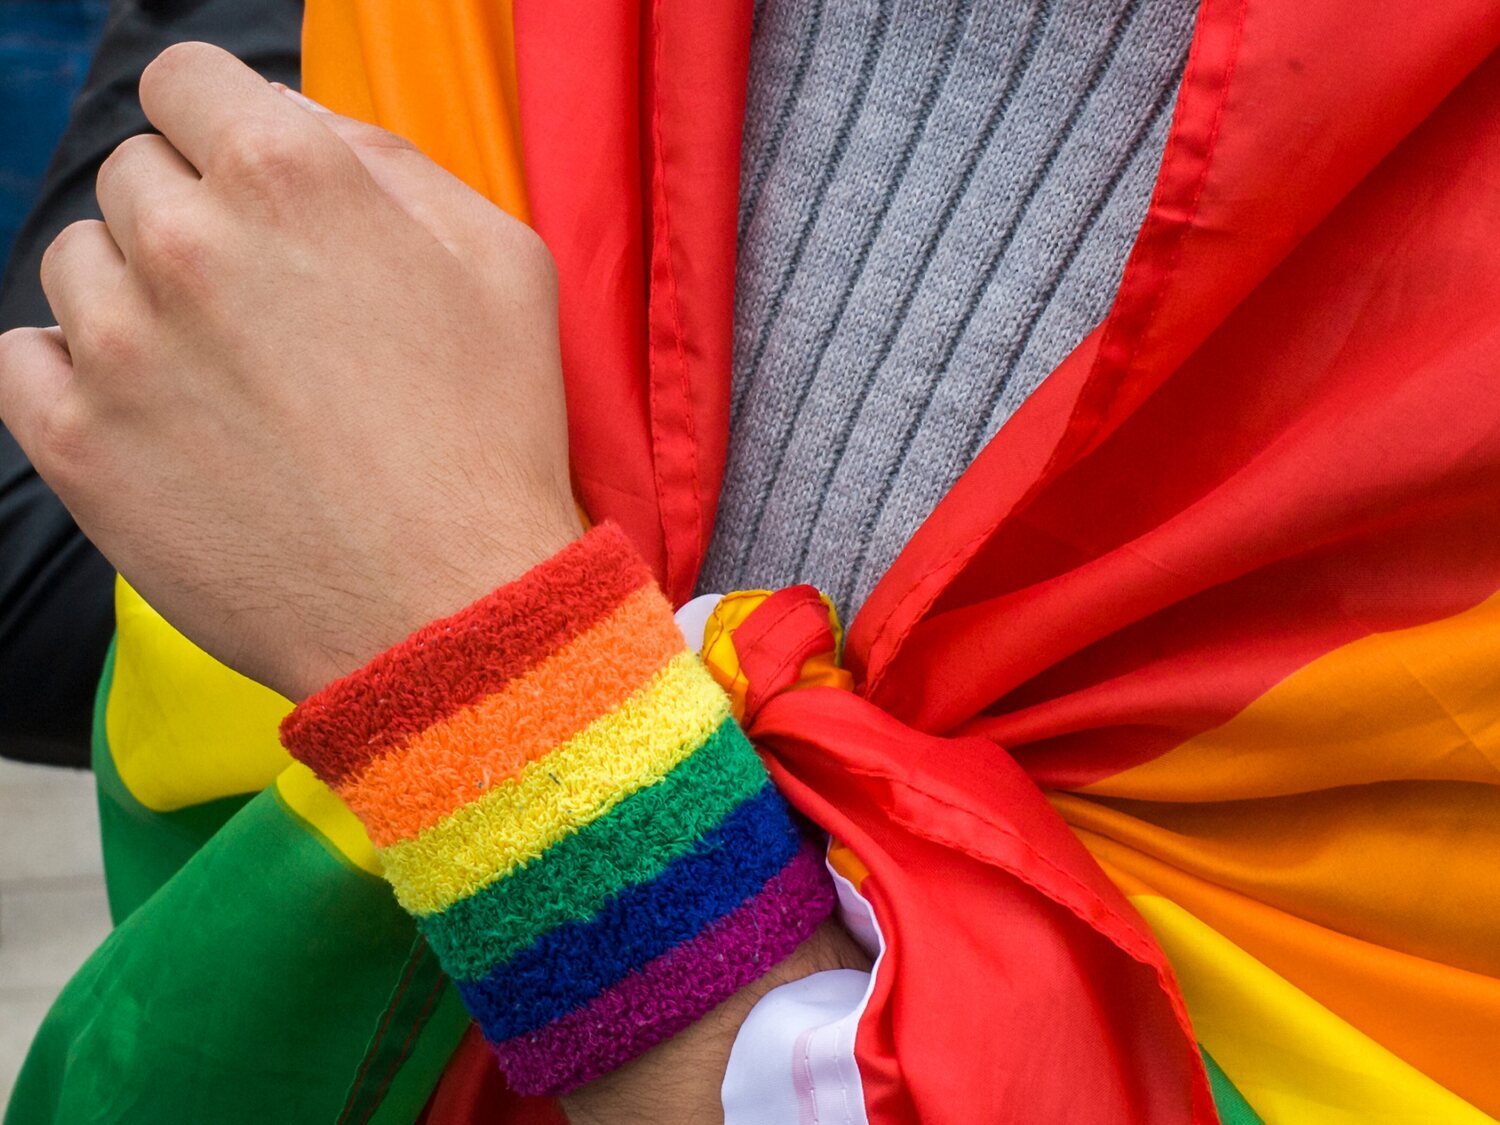 Una empresa despide a un trabajador por sus comentarios homófobos: "Los gays deberían estar colgados"